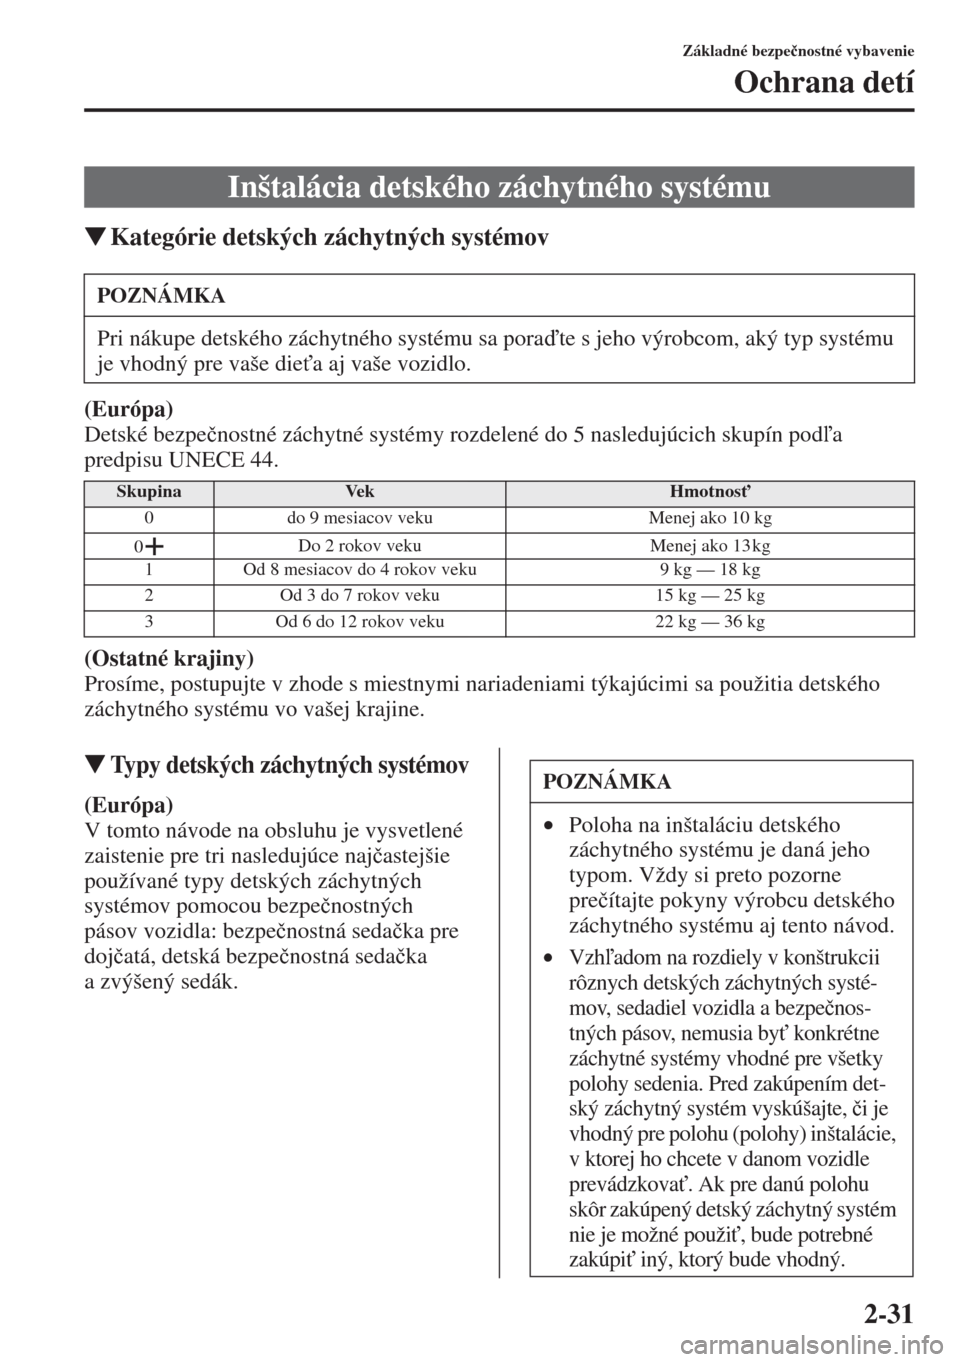 MAZDA MODEL CX-5 2015  Užívateľská príručka (in Slovak) 2-31
Základné bezpe�þnostné vybavenie
Ochrana detí
�WKategórie detských záchytných systémov
(Európa)
Detské bezpe�þnostné záchytné systémy rozdelené do 5 nasledujúcich skupín pod